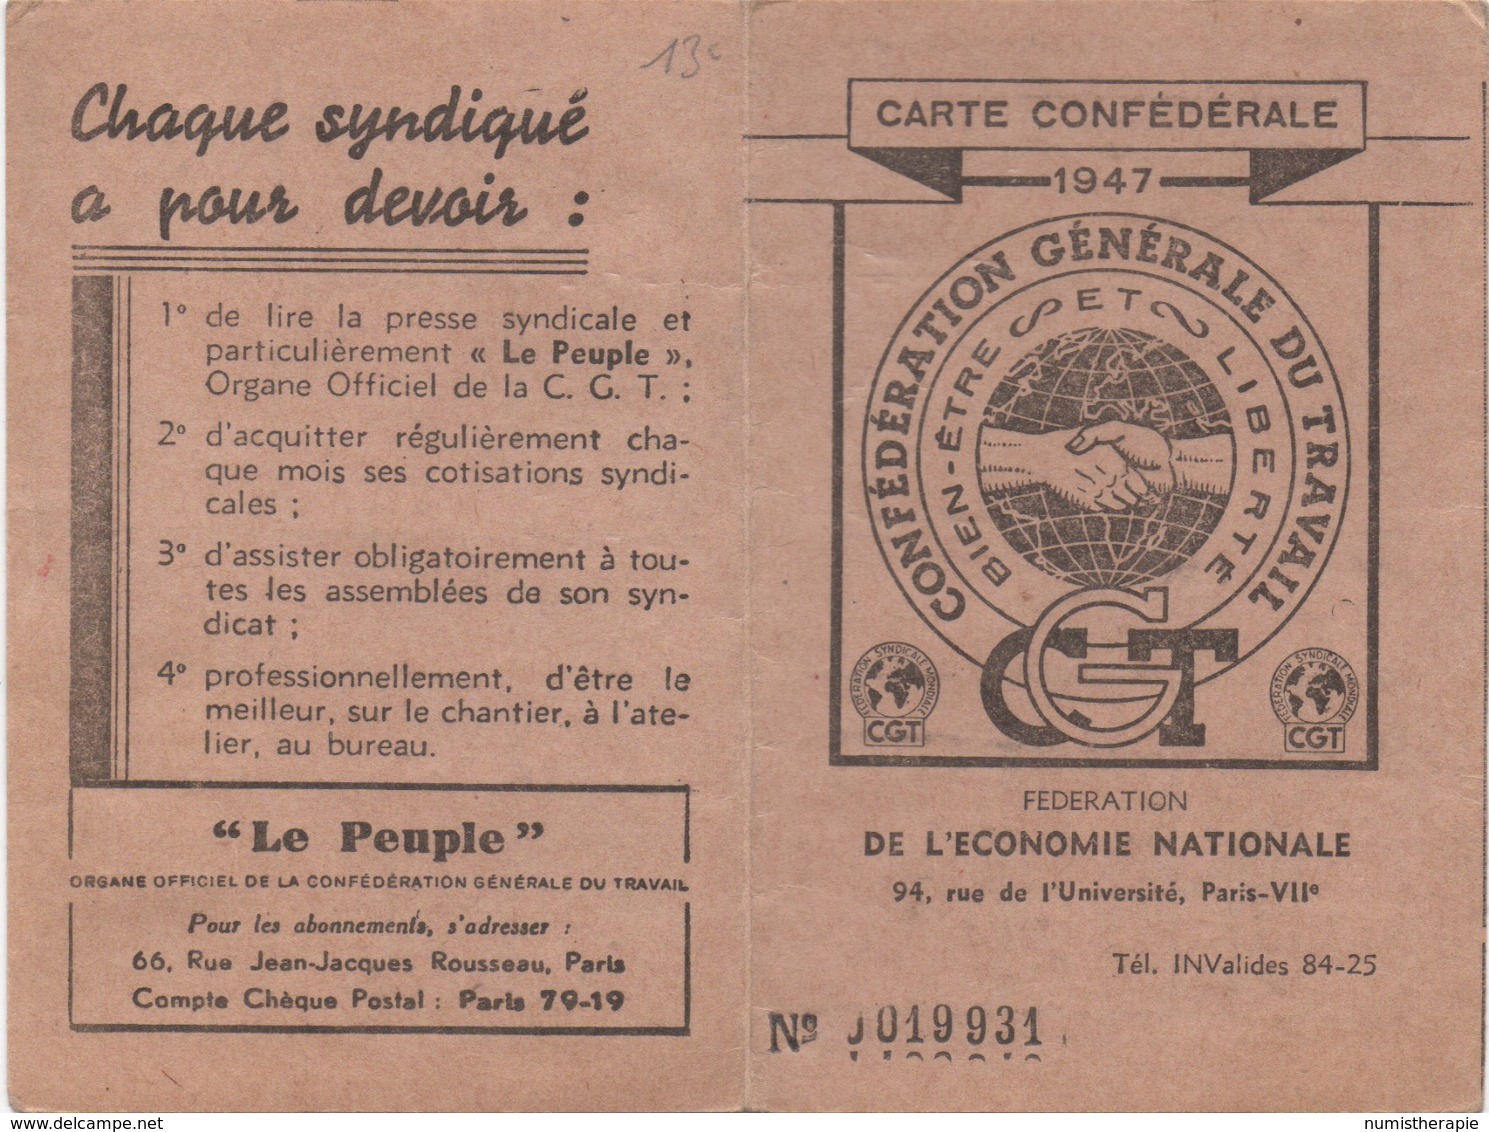 Carte Confédérale 1947 : Fédération De L'Économie Nationale - Historical Documents